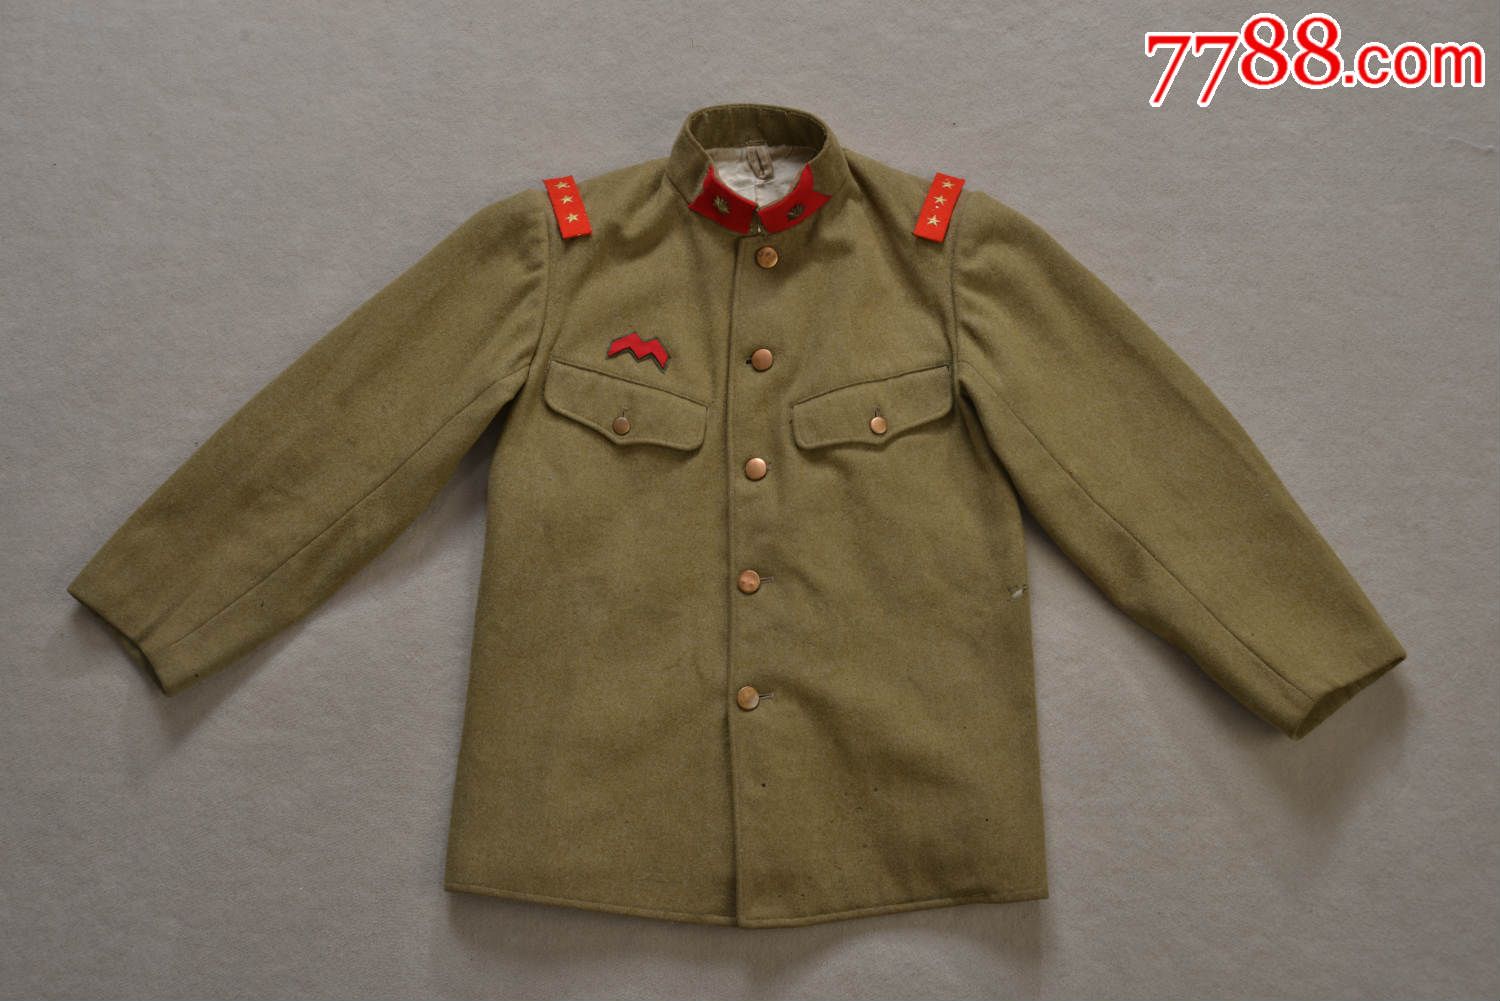 二战日军鬼子昭五式宪兵上衣(包含全套原品领章和肩章)